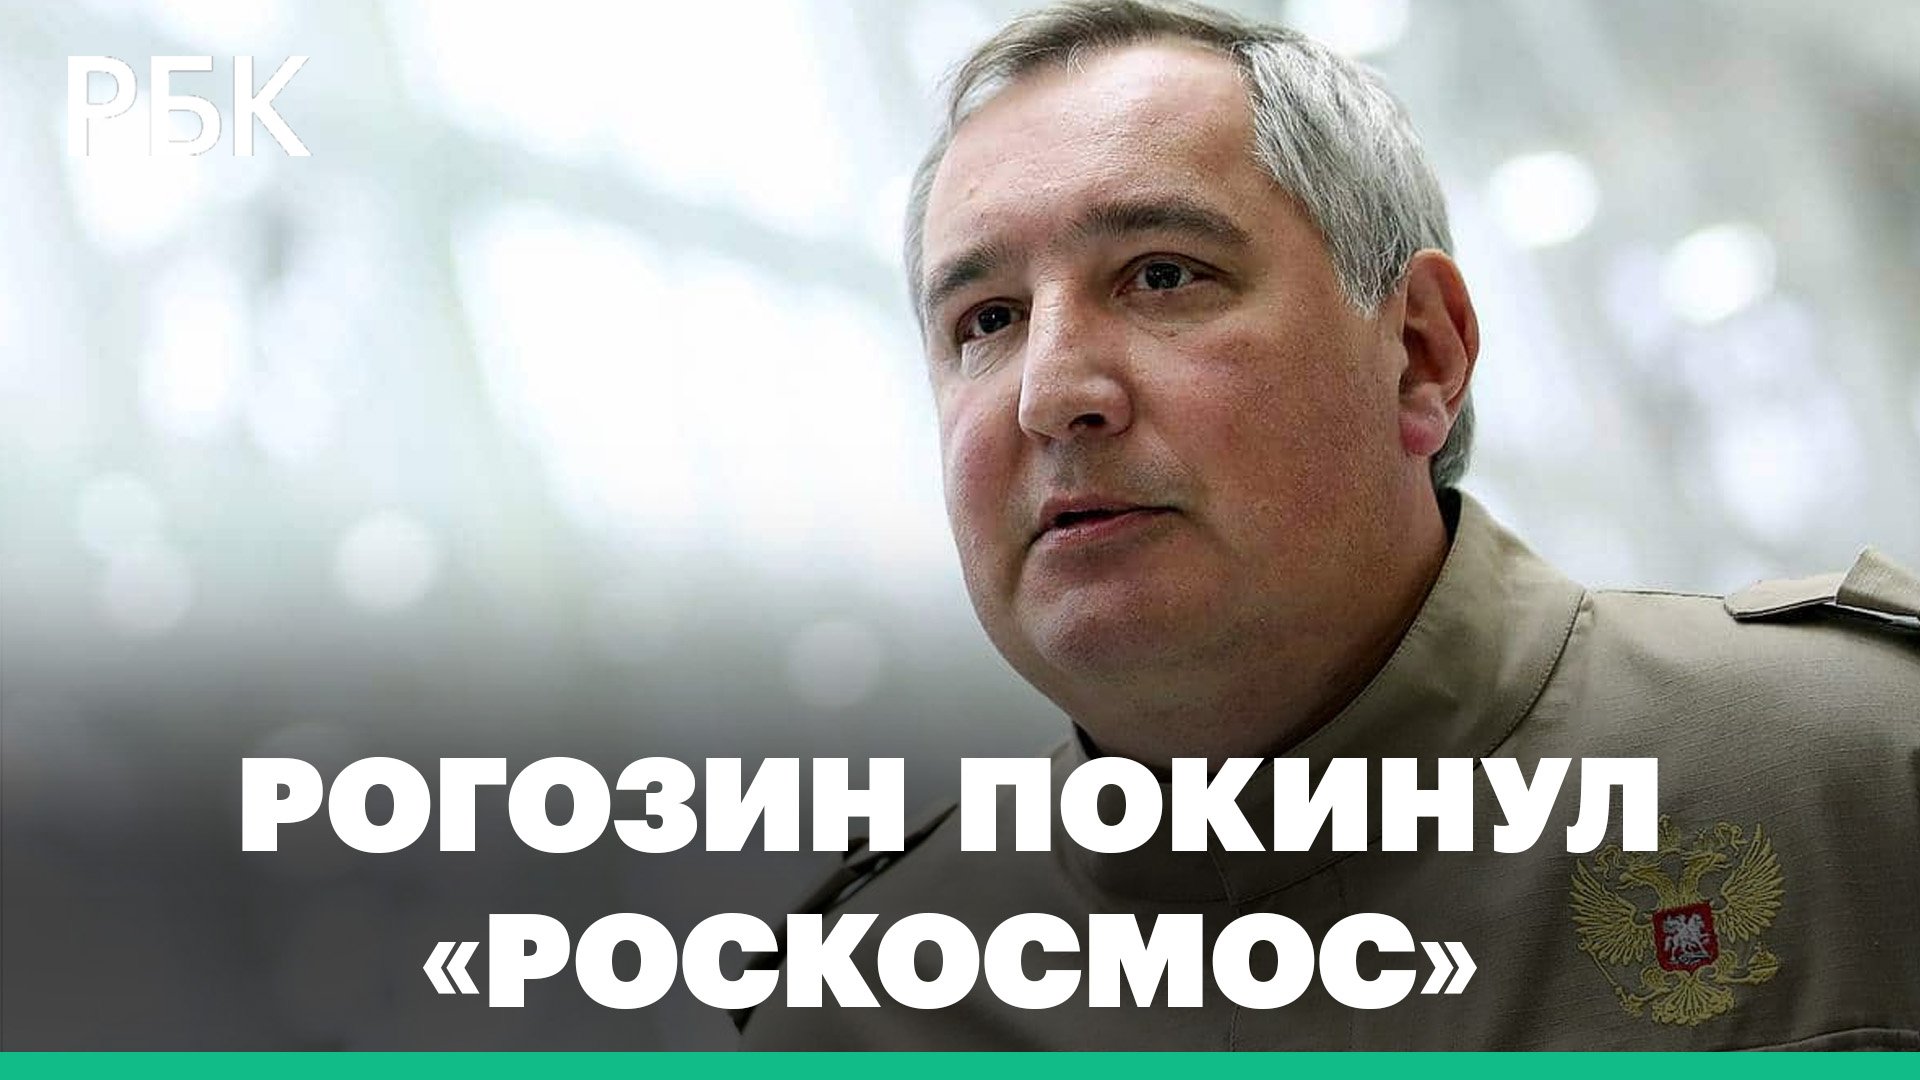 Четыре года во главе «Роскосмоса». Чем запомнится время руководства Дмитрия Рогозина